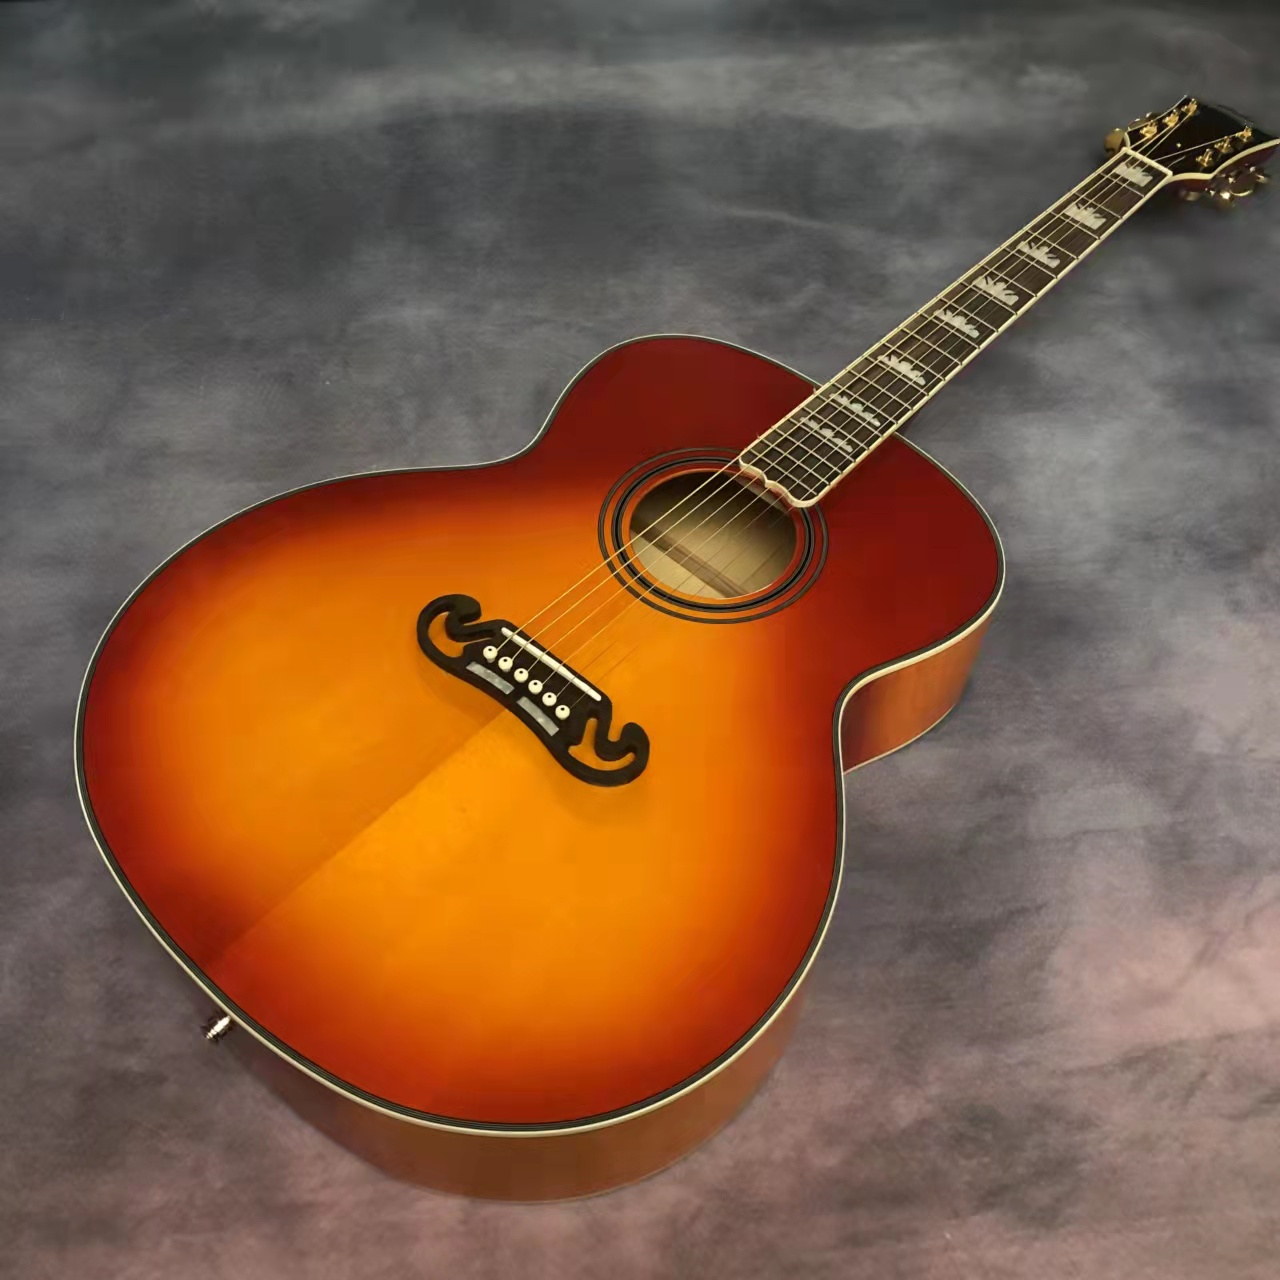 43 дюйма серии J200 профиль с твердым древесиной вишневой красной плюс электрический корпус гитара